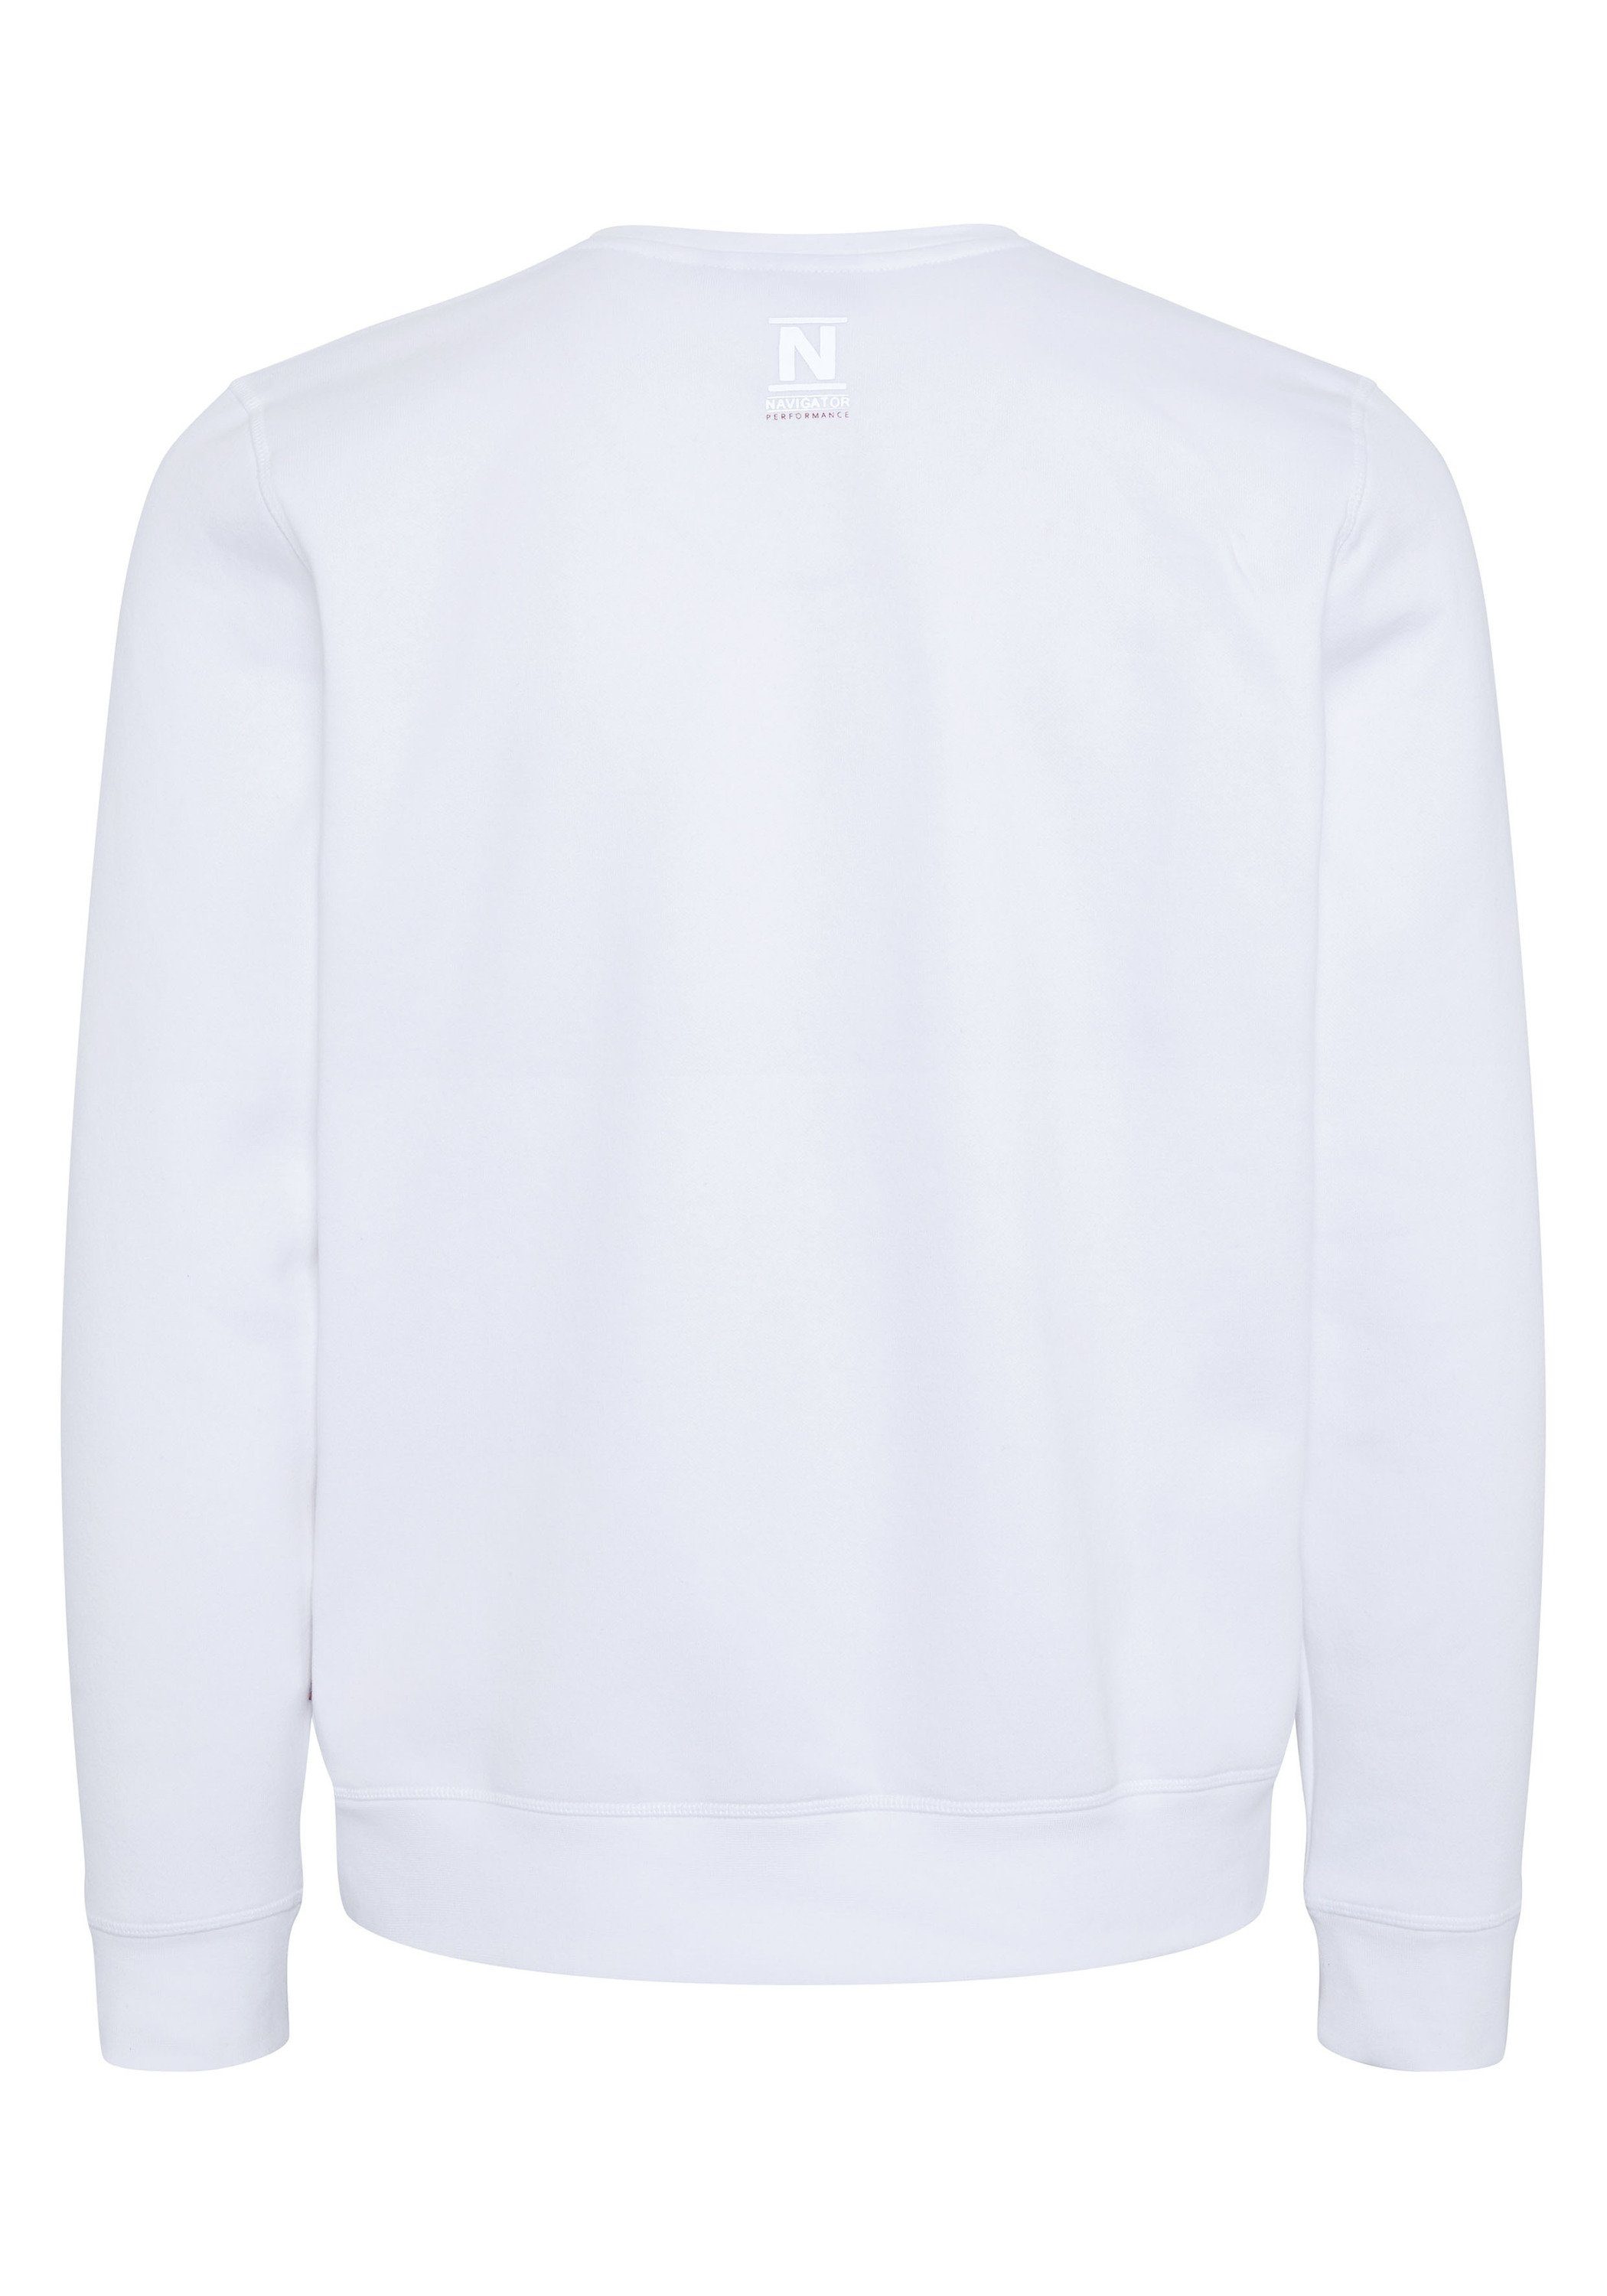 Sweatshirt Logo-Schriftzug NAVIGATOR mit Bright White 11-0601